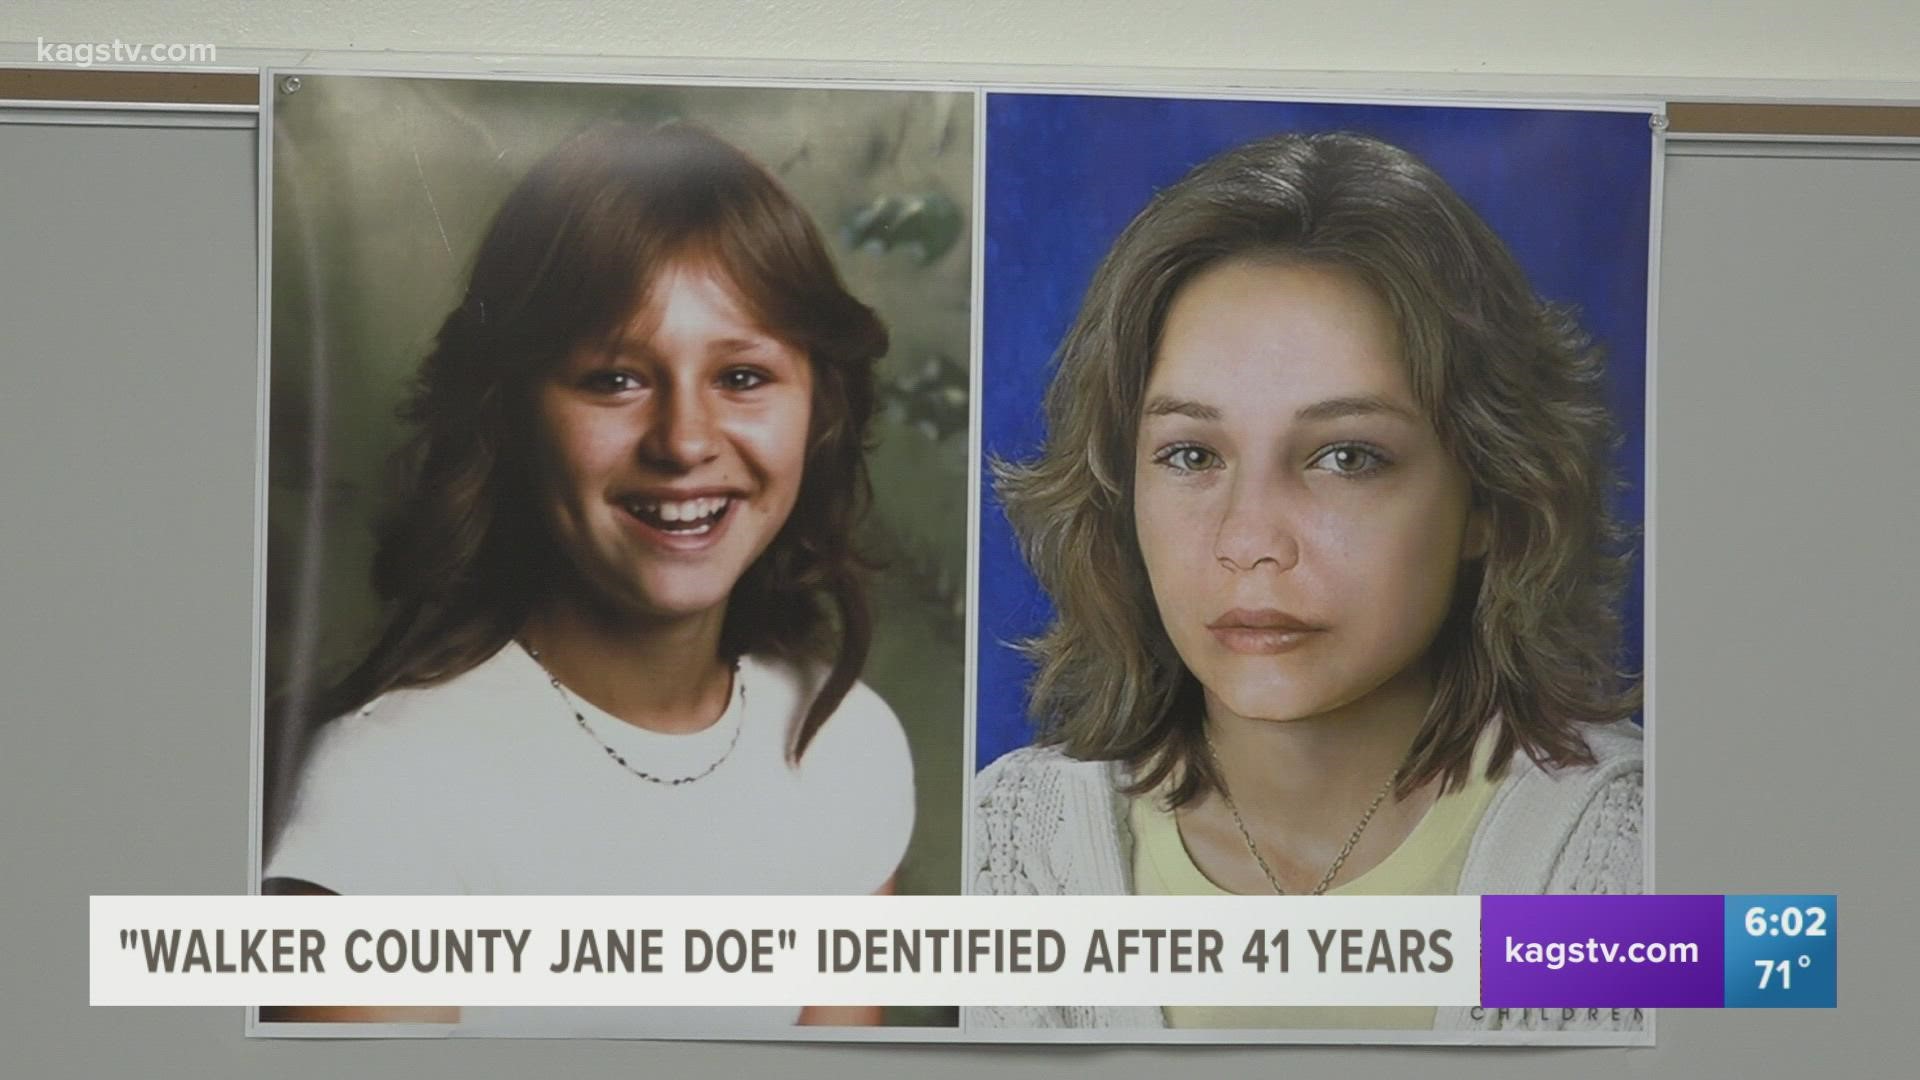 "Walker County Jane Doe" identified after 41 years